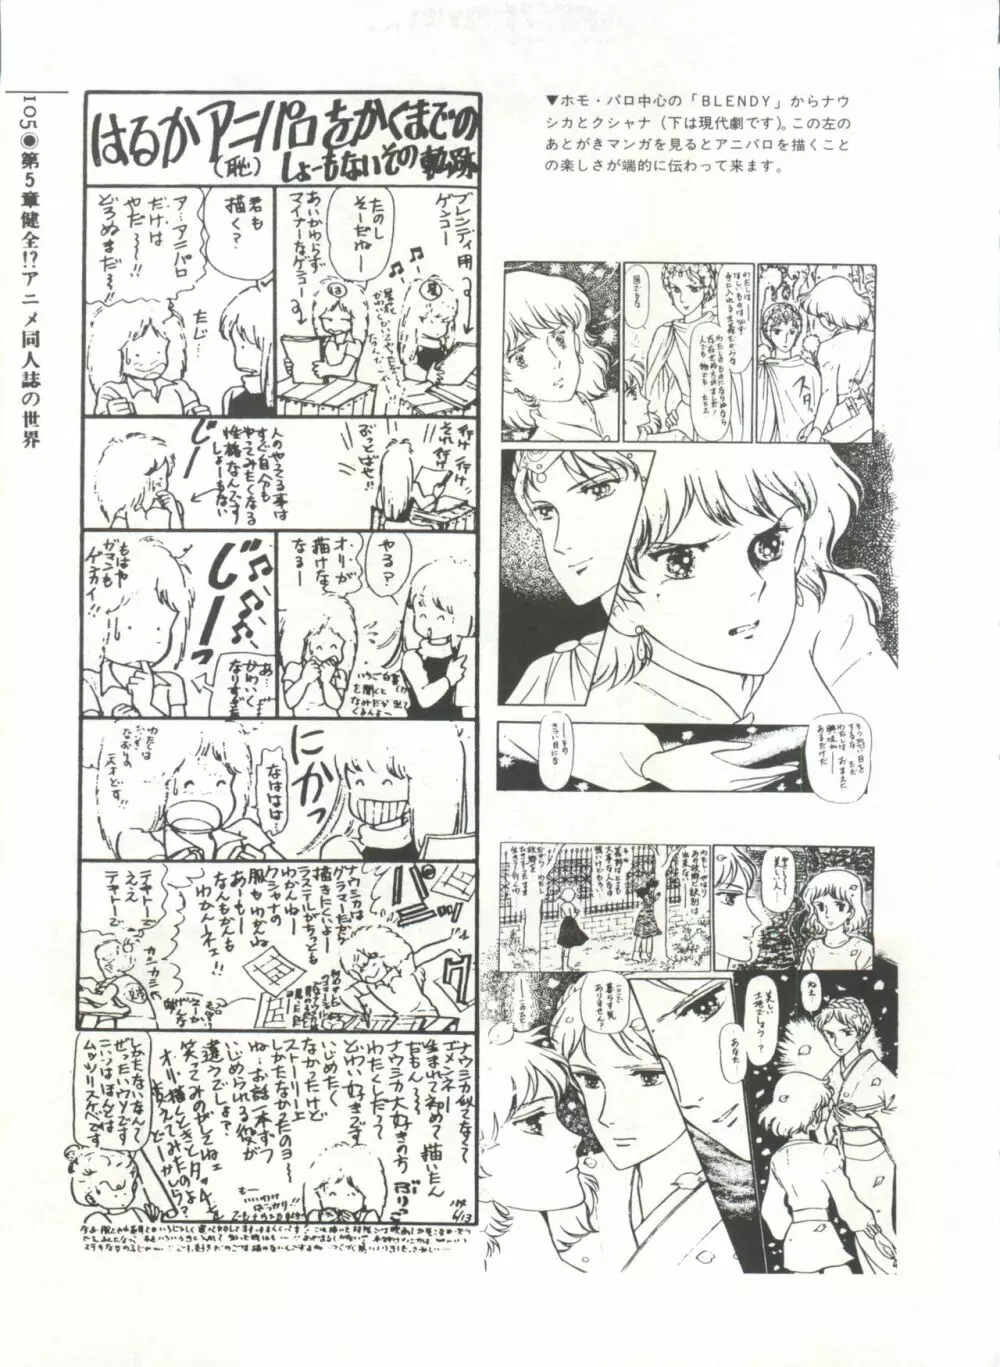 [Anthology] 美少女症候群(2) Lolita syndrome (よろず) 108ページ